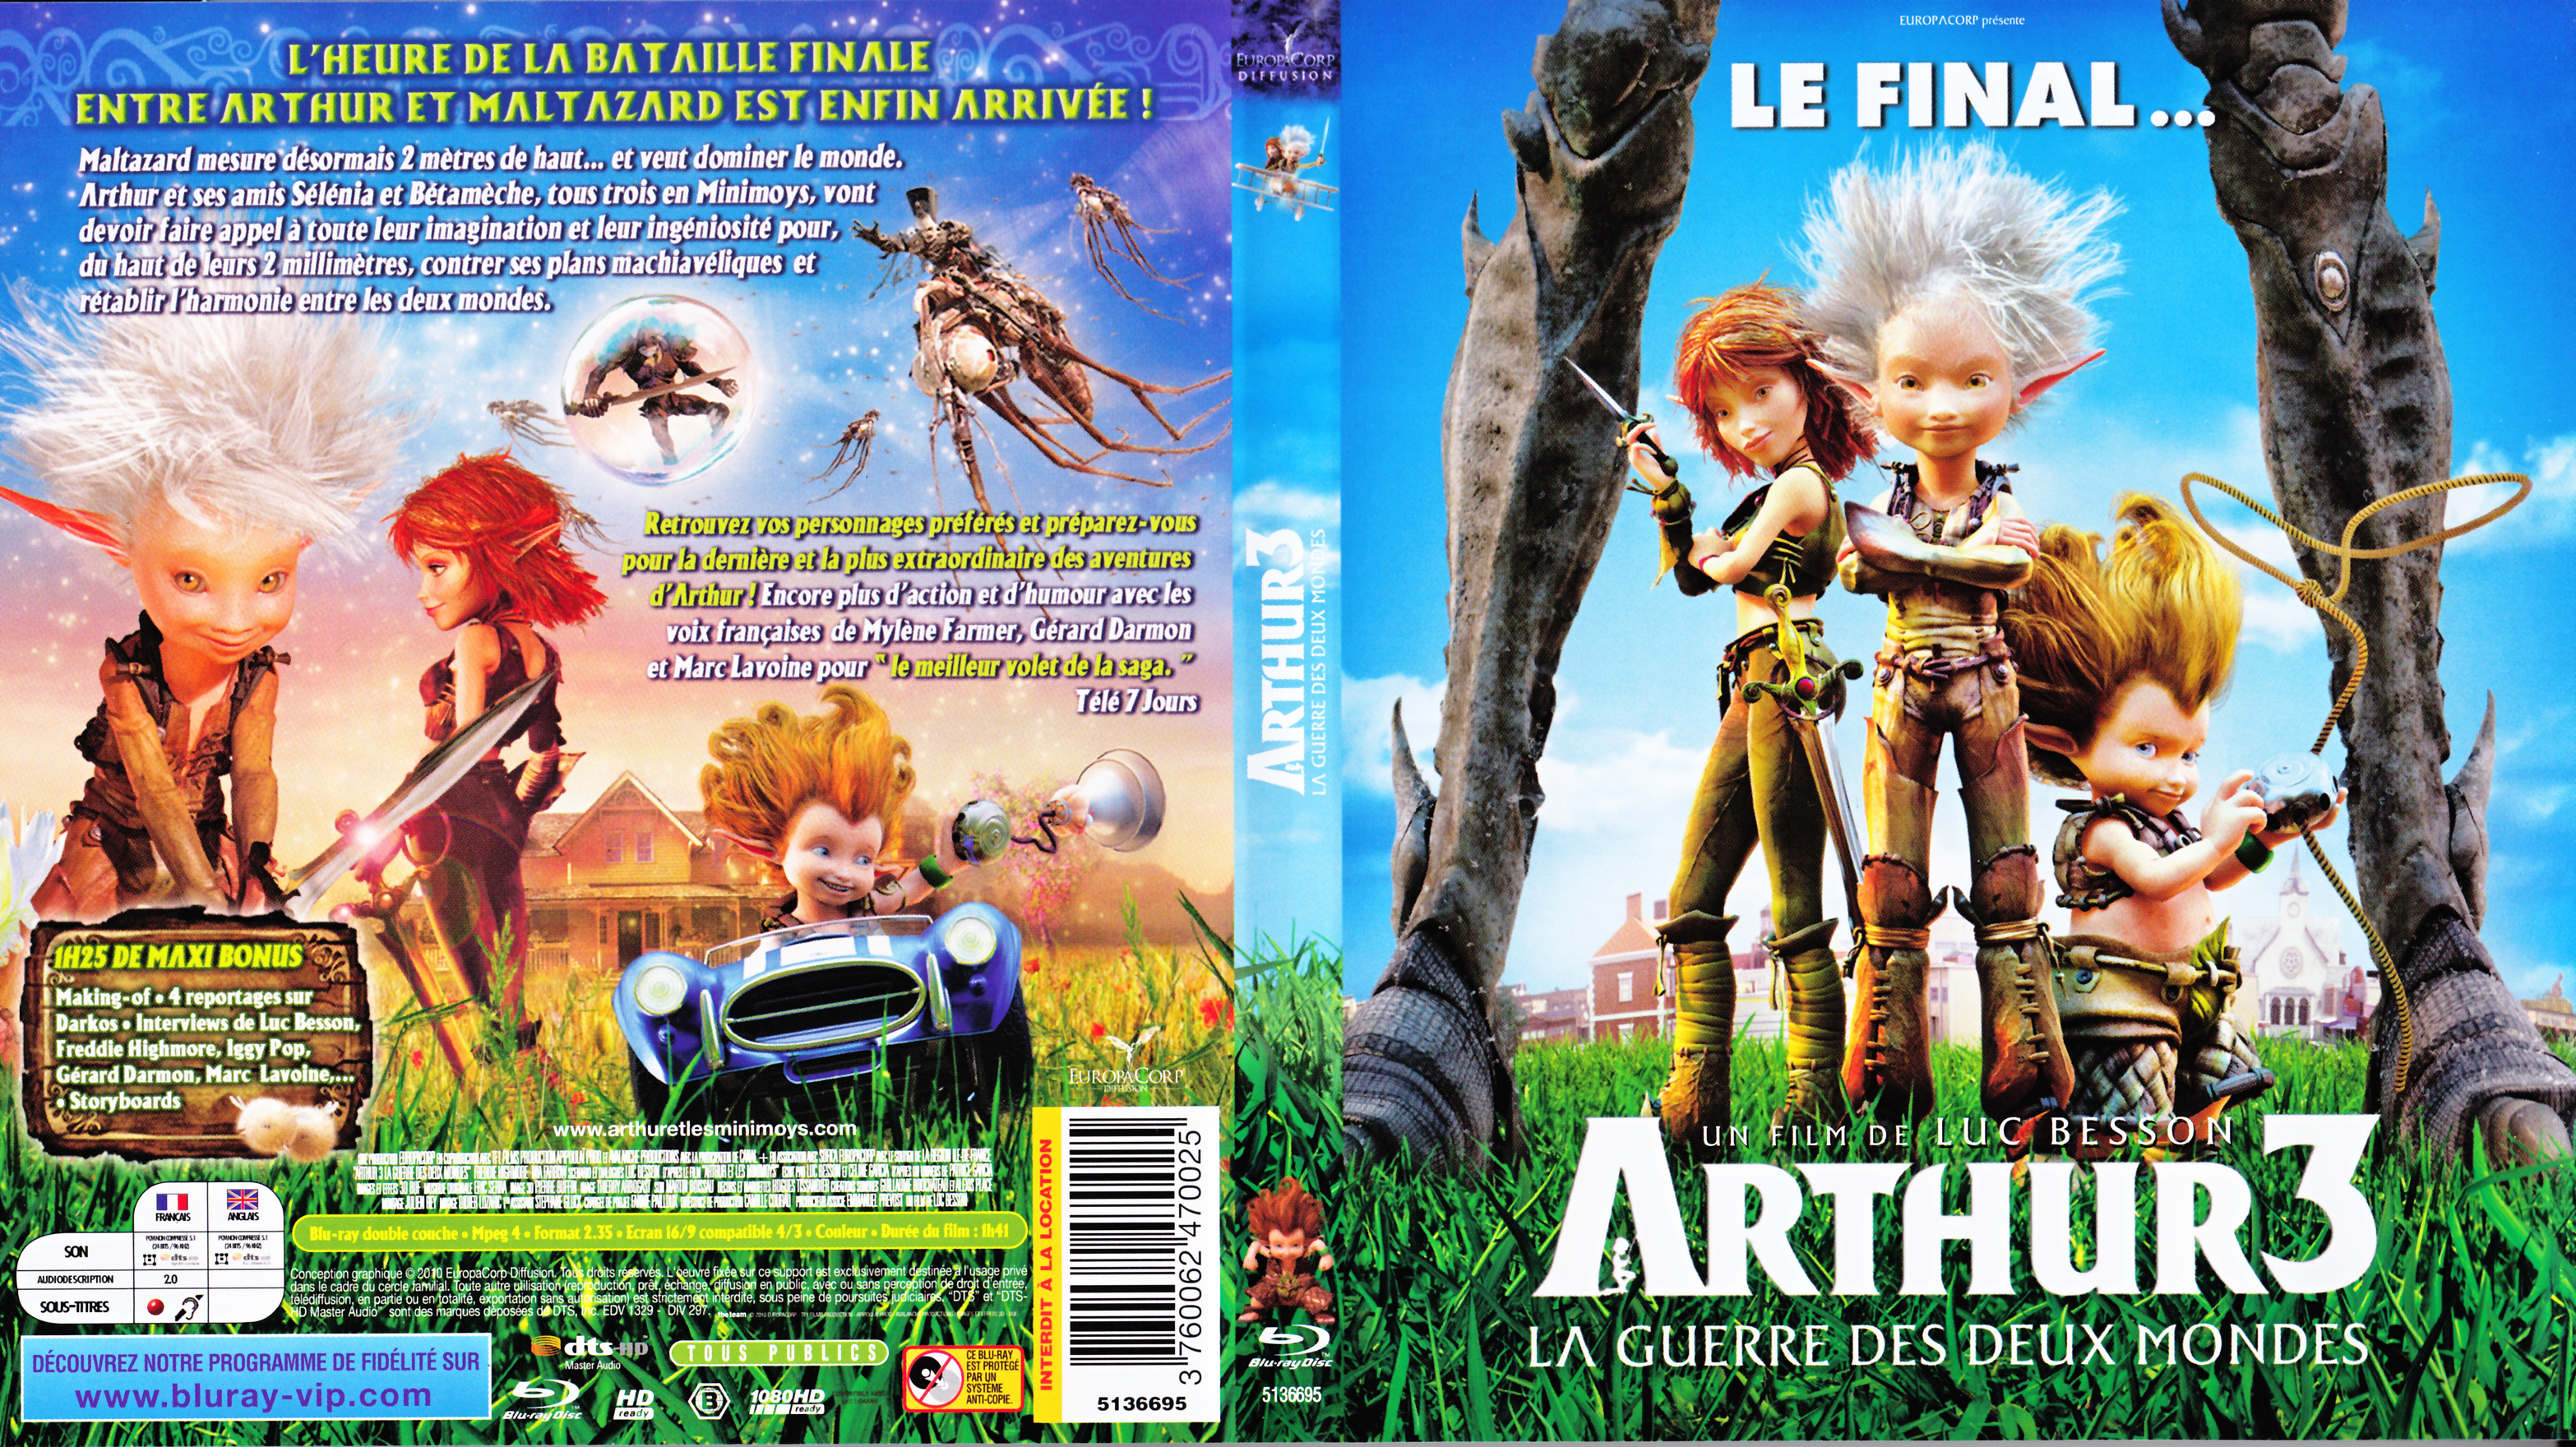 Jaquette DVD Arthur 3 La guerre des deux mondes (BLU-RAY)